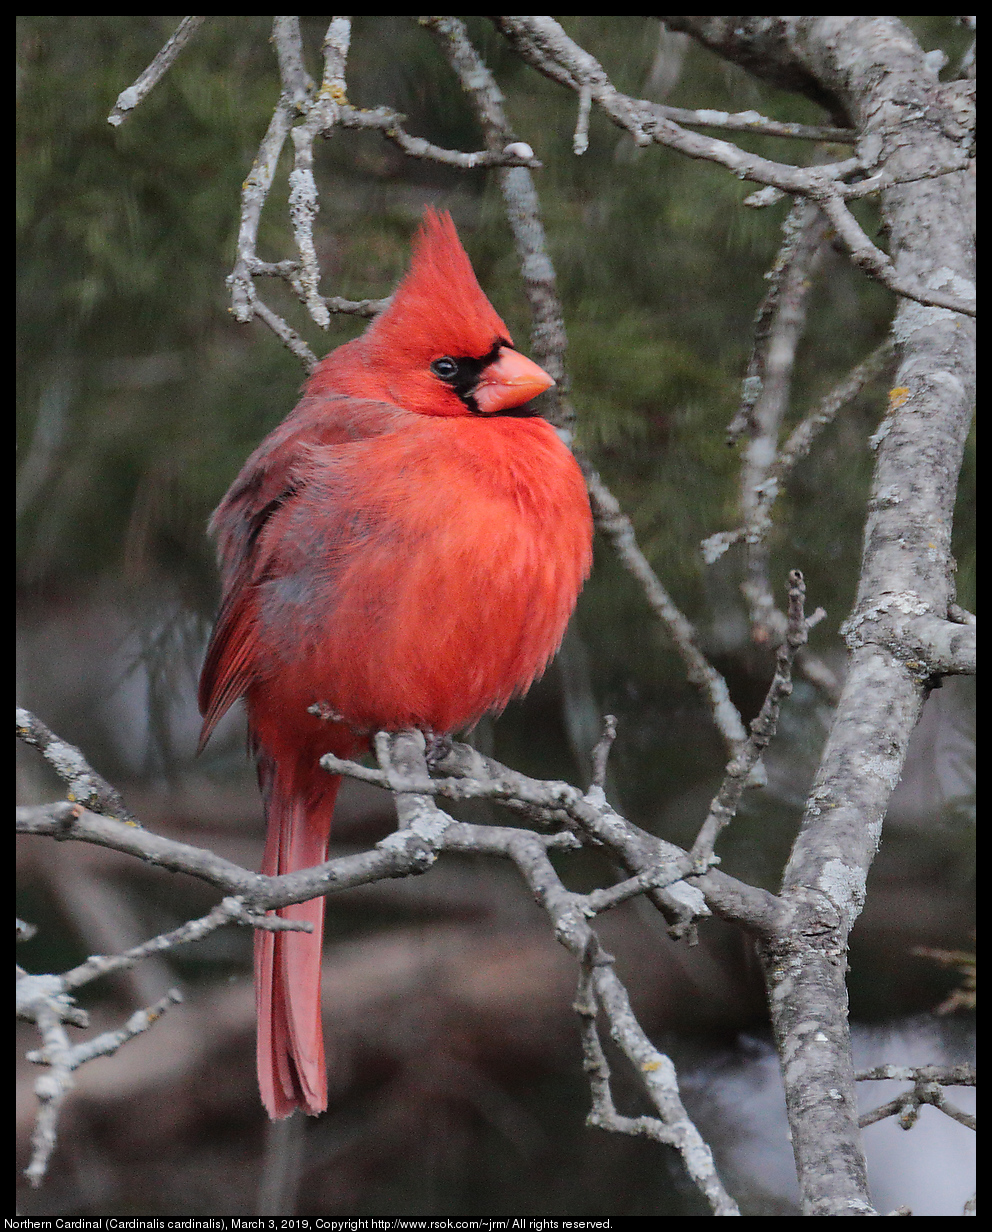 Northern Cardinal (Cardinalis cardinalis), March 3, 2019